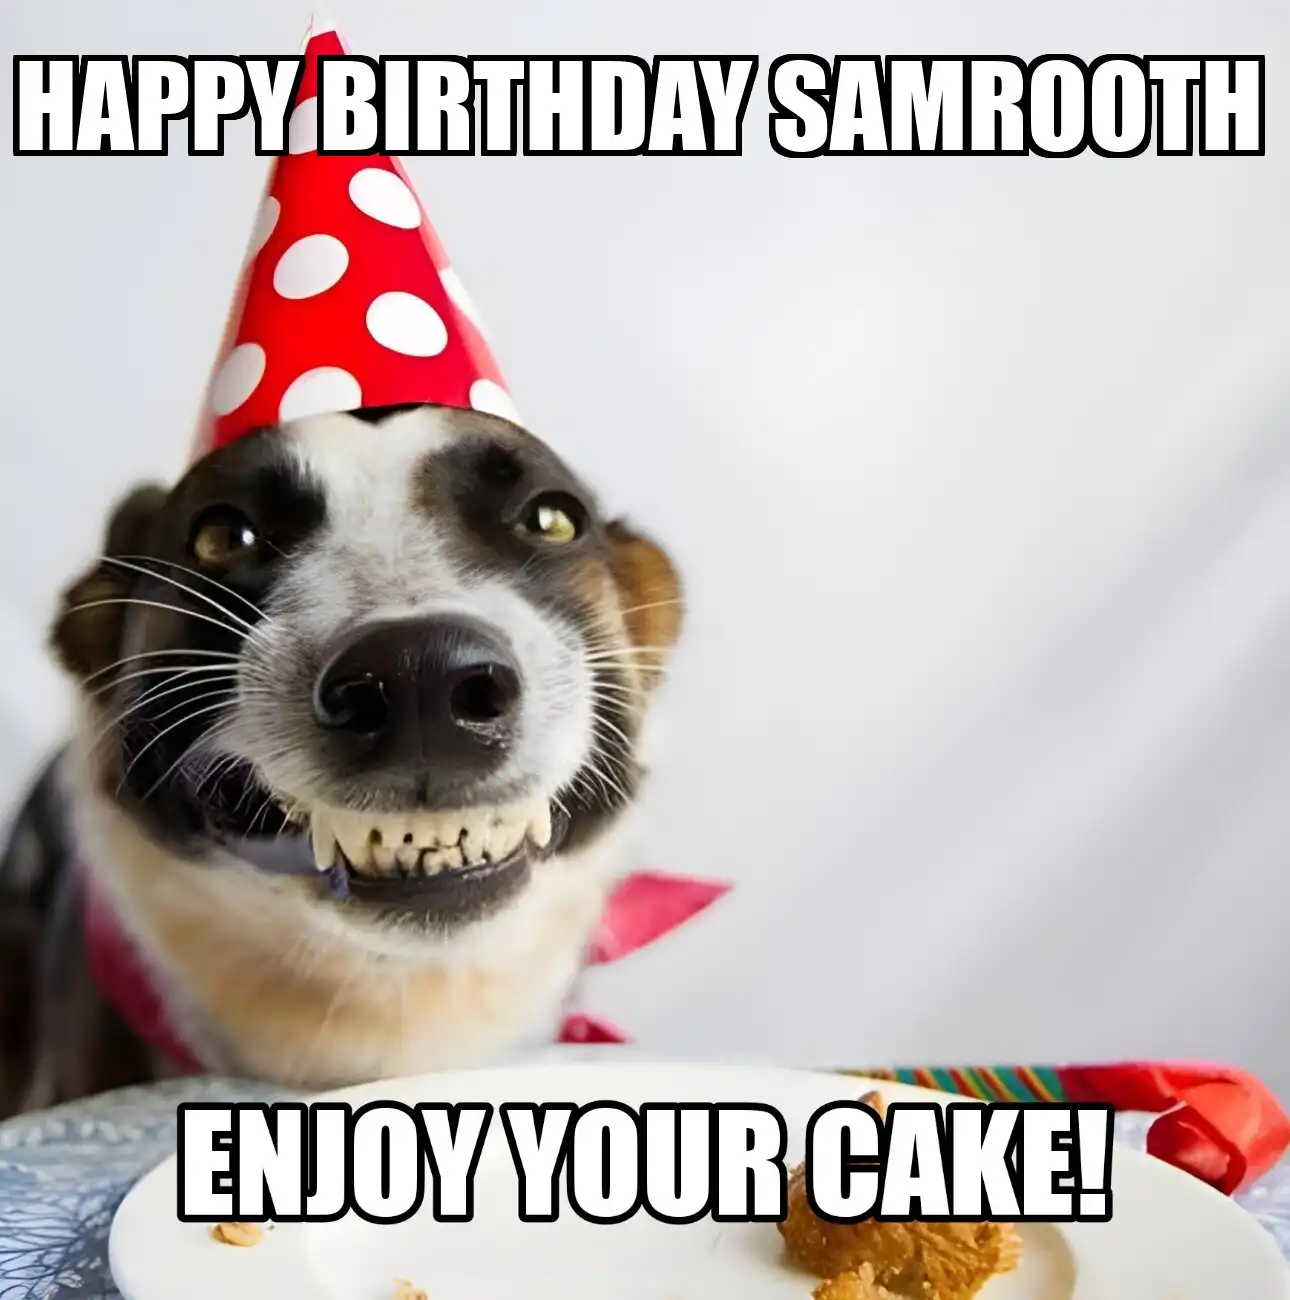 Happy Birthday Samrooth Enjoy Your Cake Dog Meme